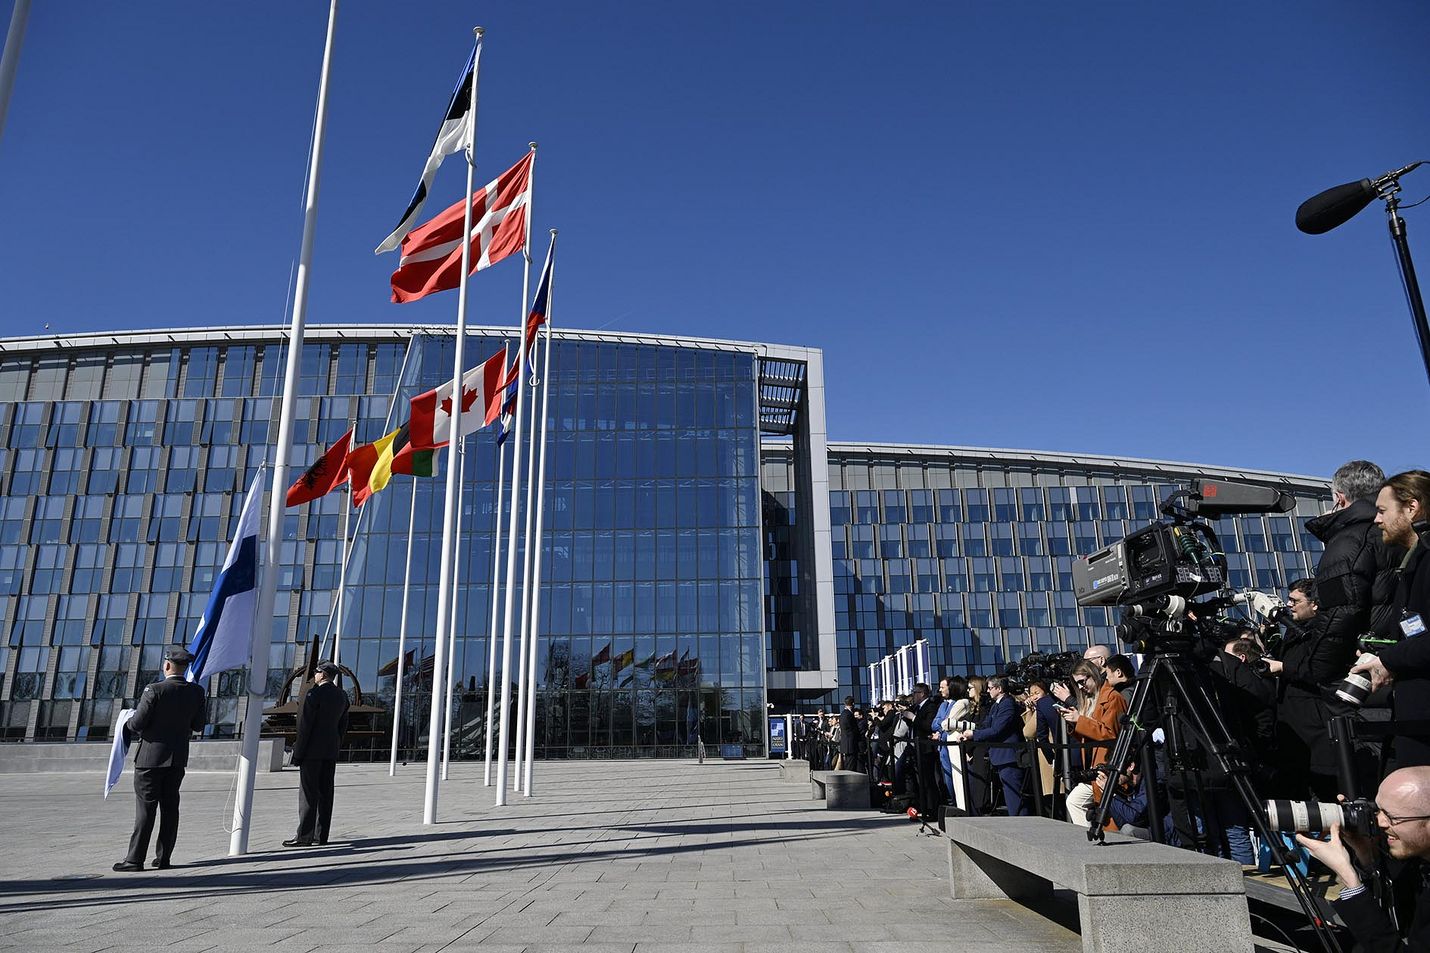 Tunteikas hetki. Maamme-laulu soi ja siniristi nostettiin Nato-maiden lippurivistöön Naton päämajan edessä Brysselissä tiistaina.